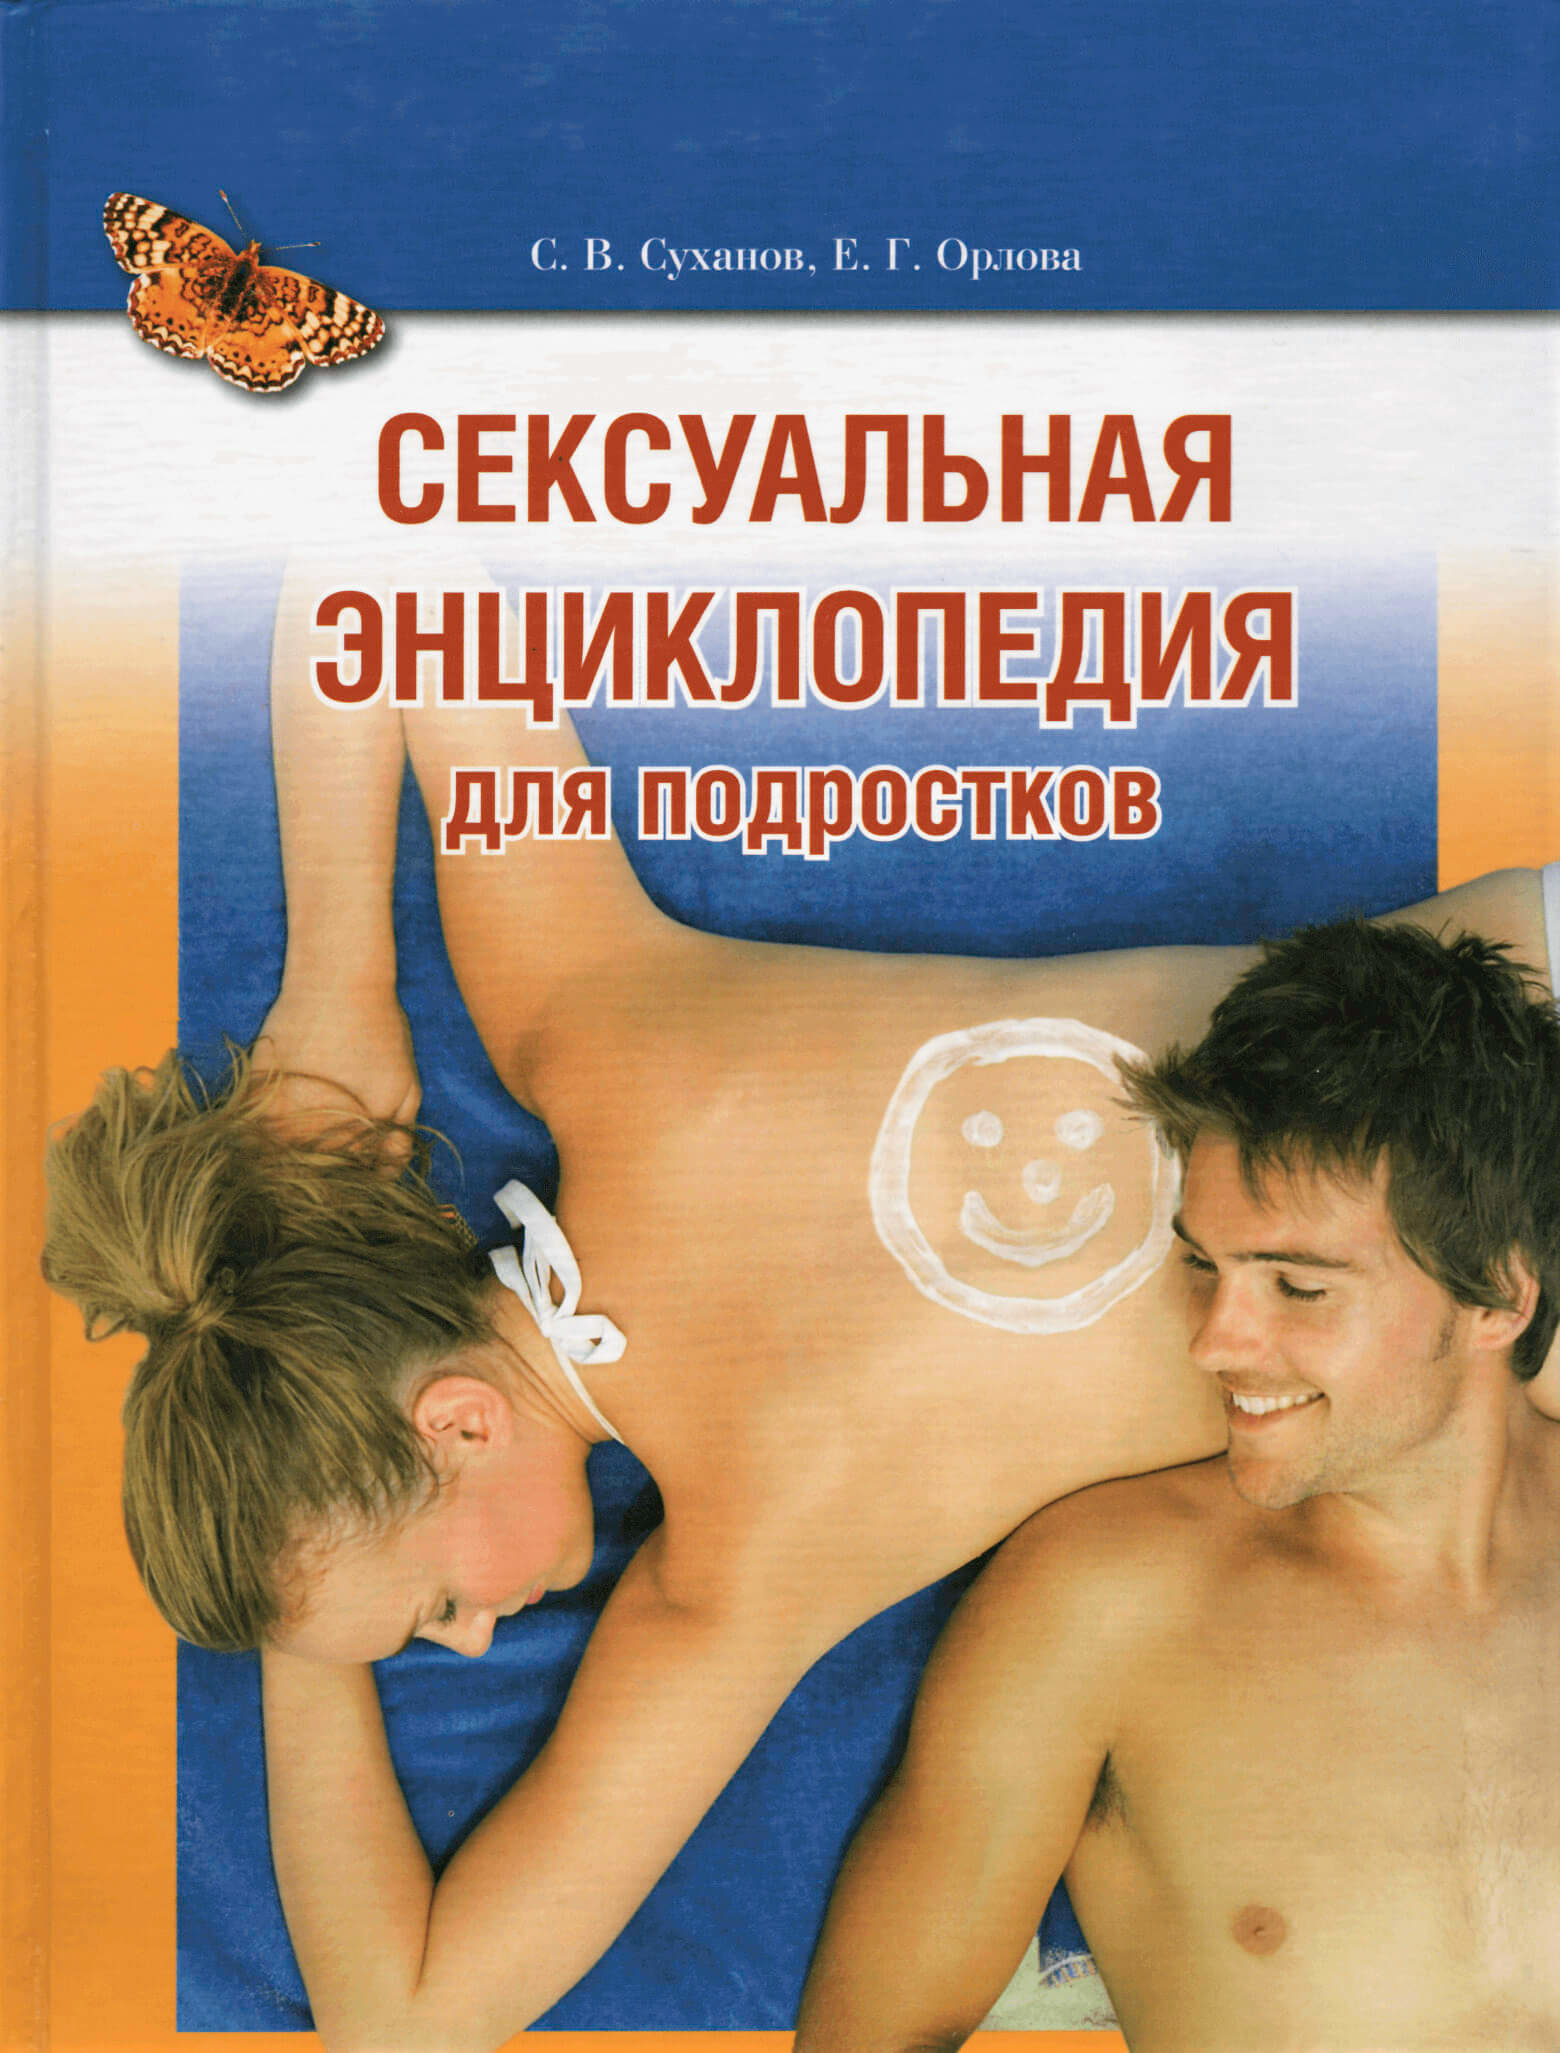 Сексуальная энциклопедия для подростков. Автор — С.В. Суханов, Е.Г. Орлова. 